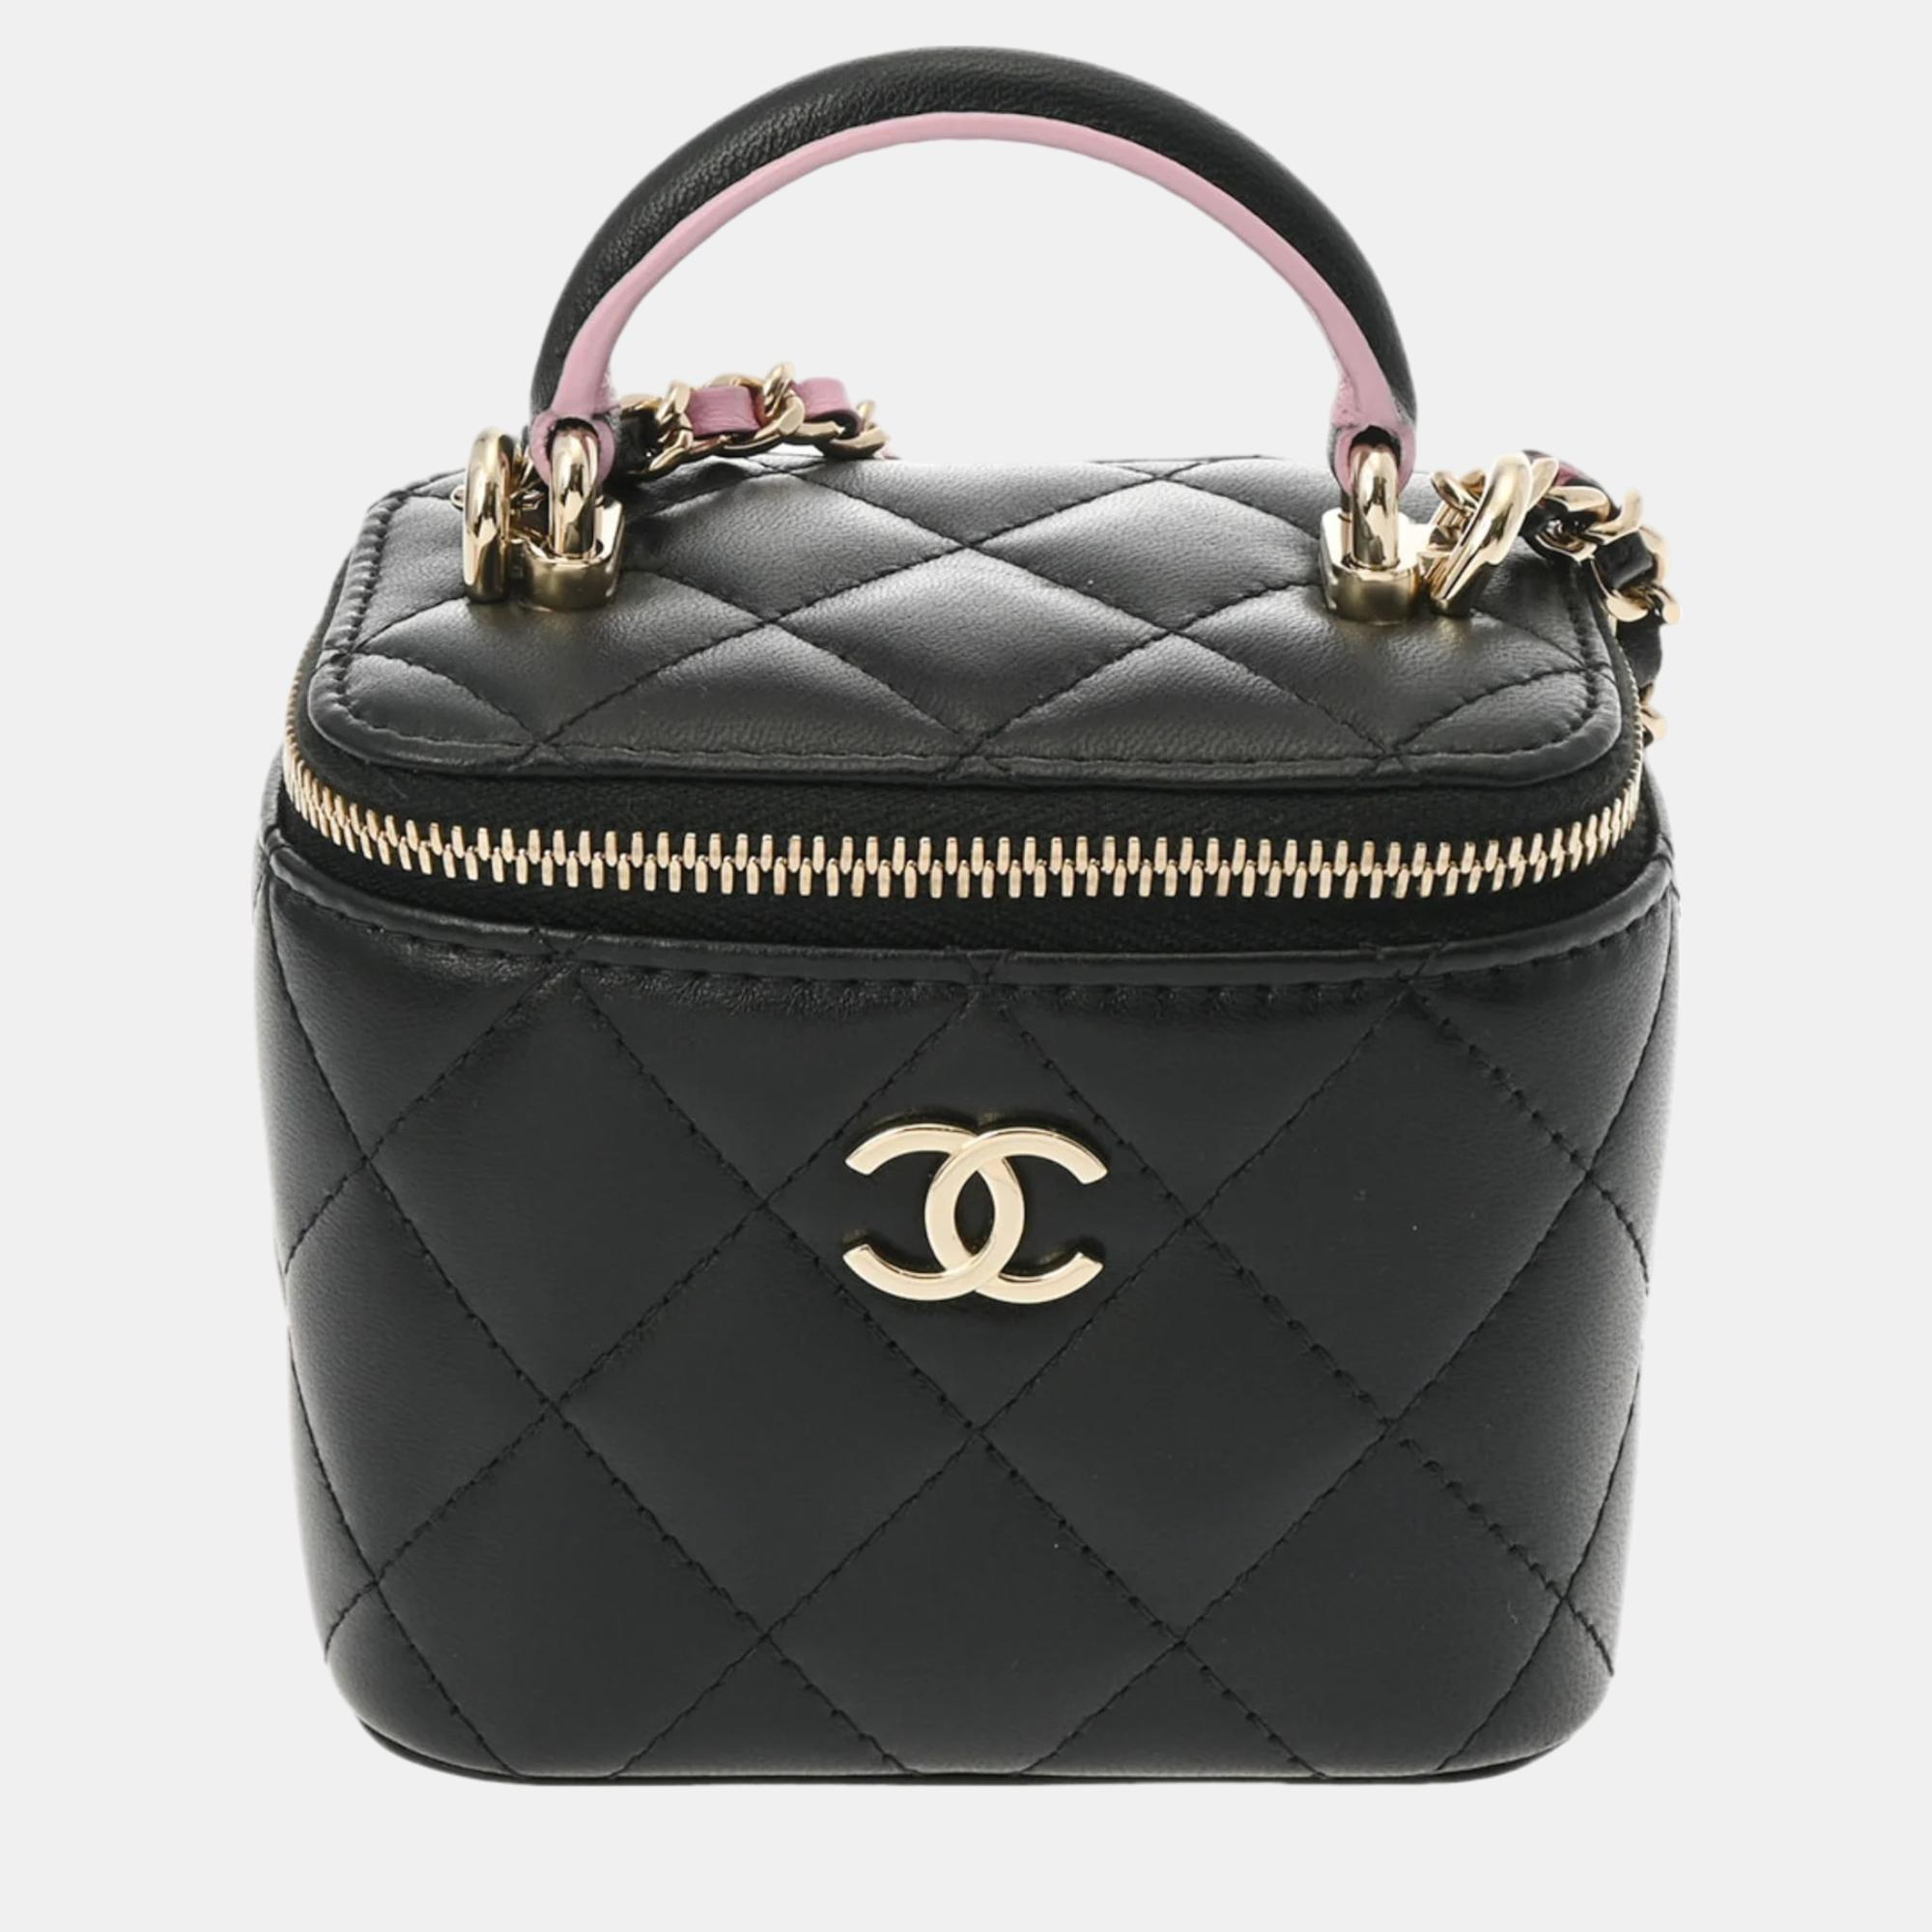 Chanel black leather mini vanity case shoulder bag